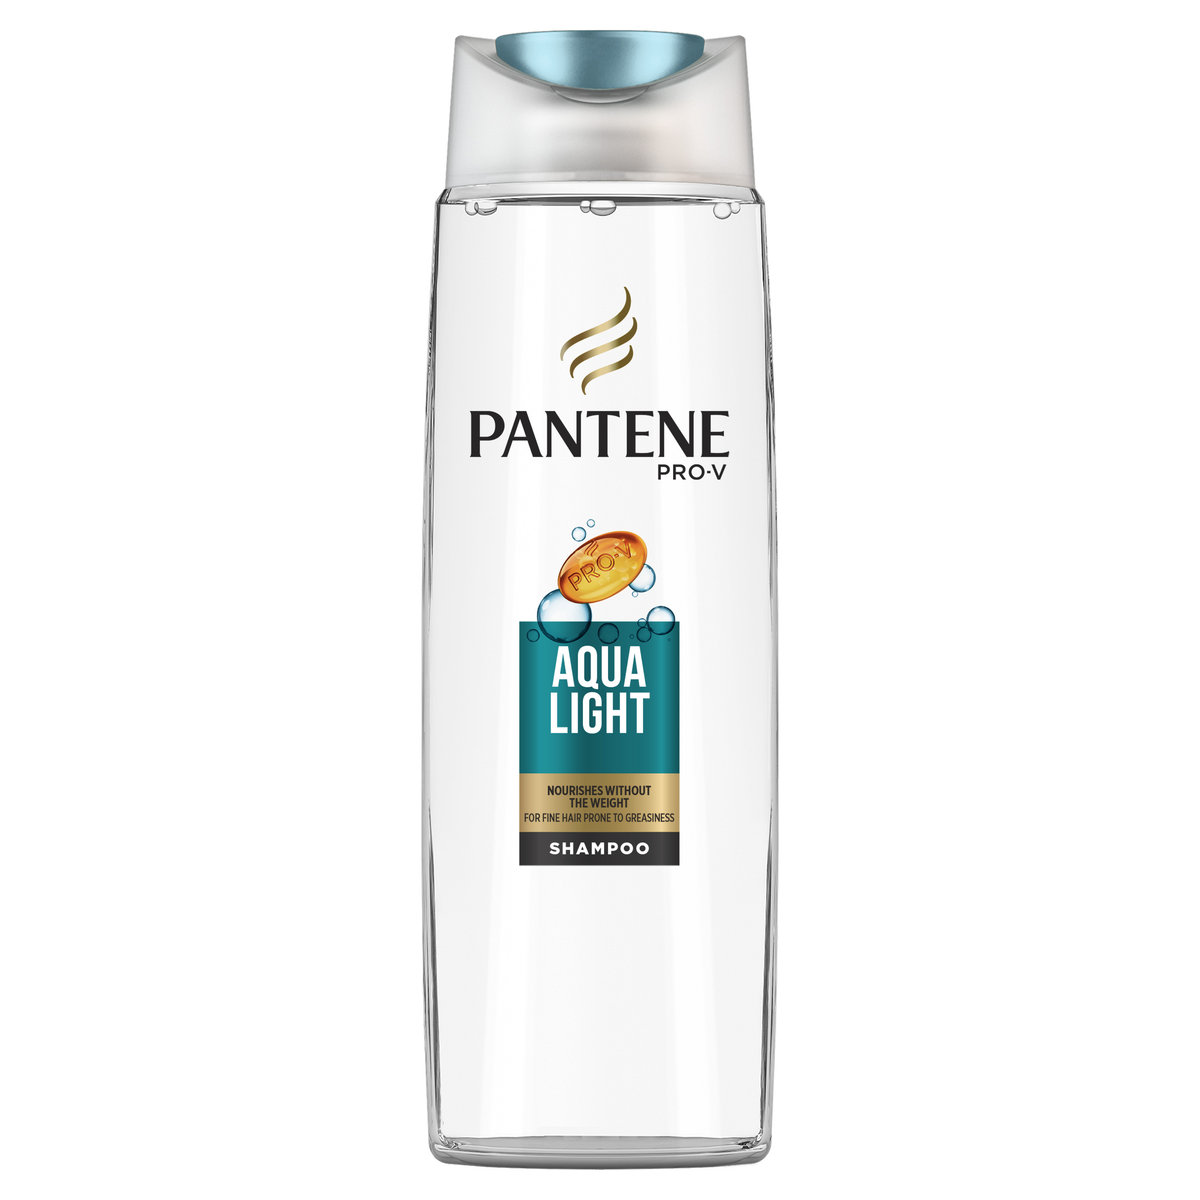 pantene pro-v aqua light szampon do włosów